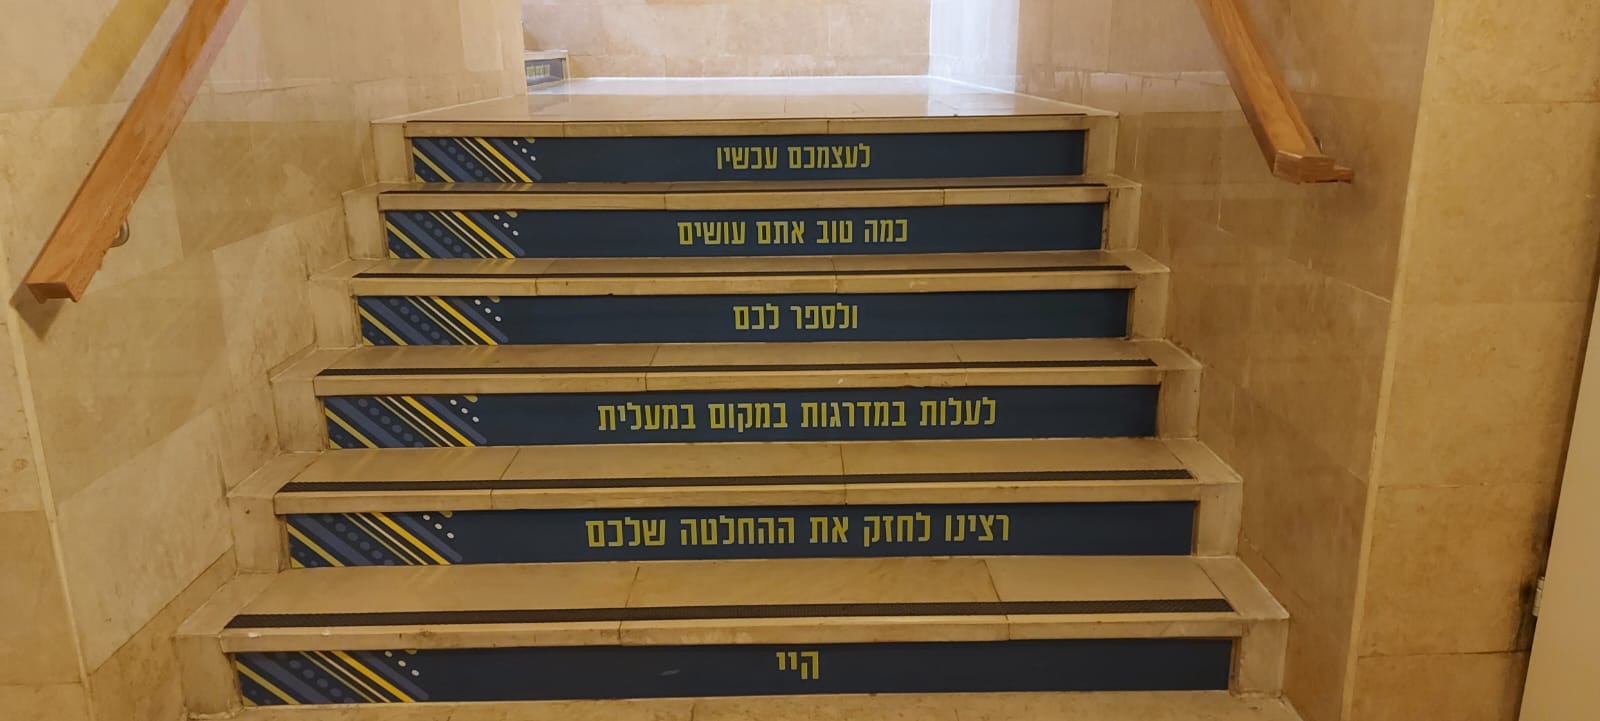 שלטים לעידוד עלייה במדרגות במשרדי עיריית ירושלים. &quot;ארגון העובדים רואה חשיבות רבה בשמירה על בריאות העובדים&quot; (צילום: דוברות העירייה)